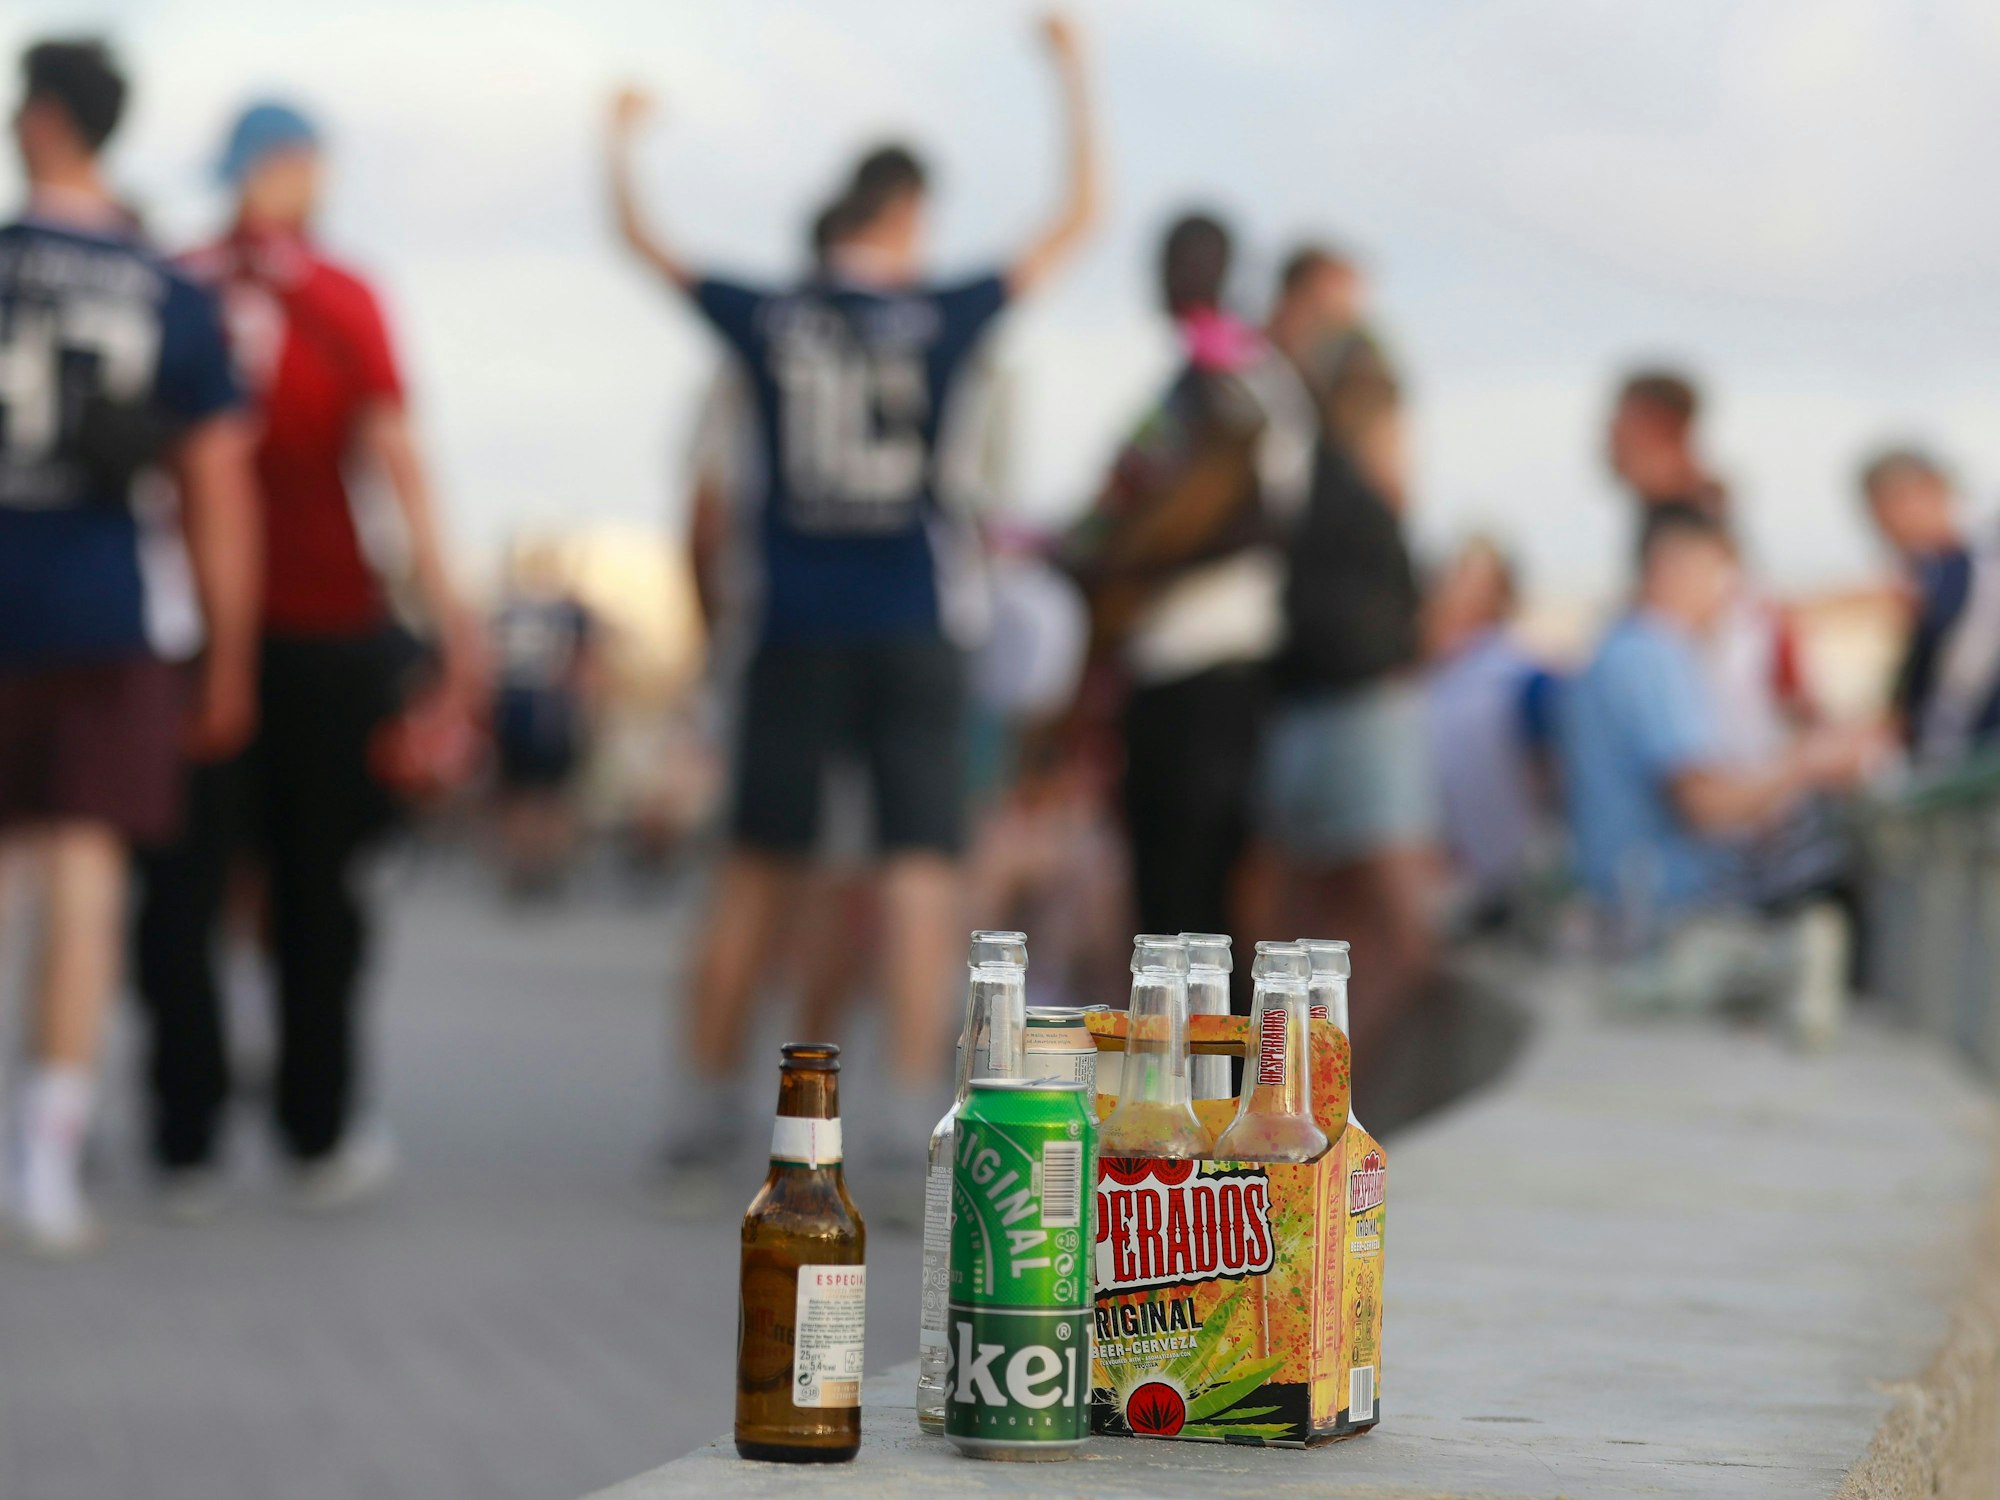 Feiernde auf Mallorca, im Vordergrund mehrere Bierflaschen.